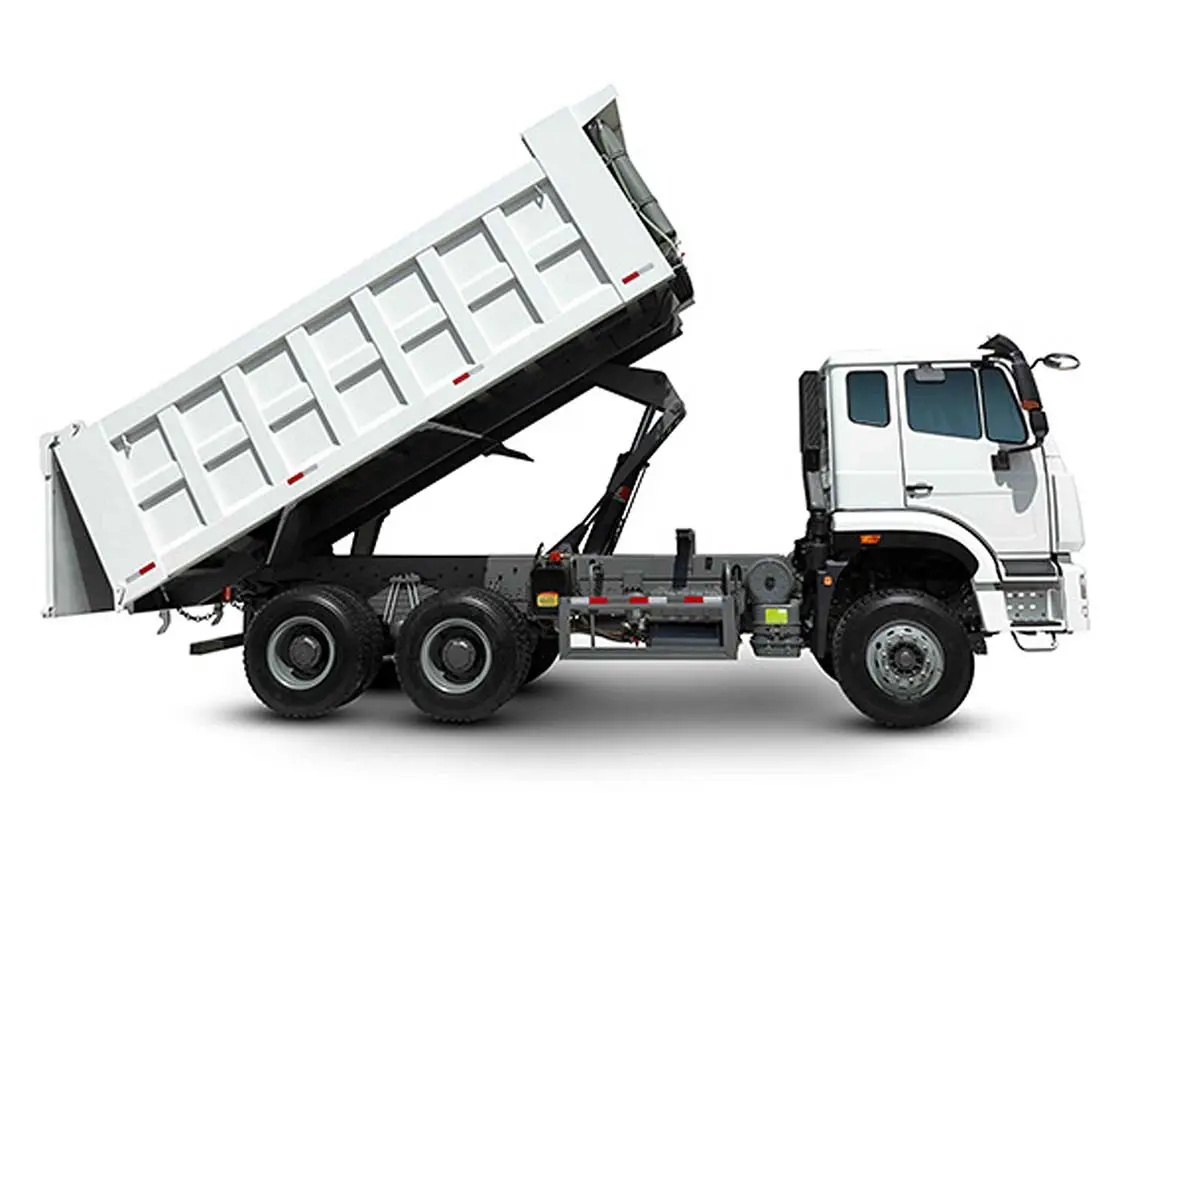 Prezzo basso da 2013 a 2019 anni Sinotruk Dumper per camion Howo Dumper 6x4 usato